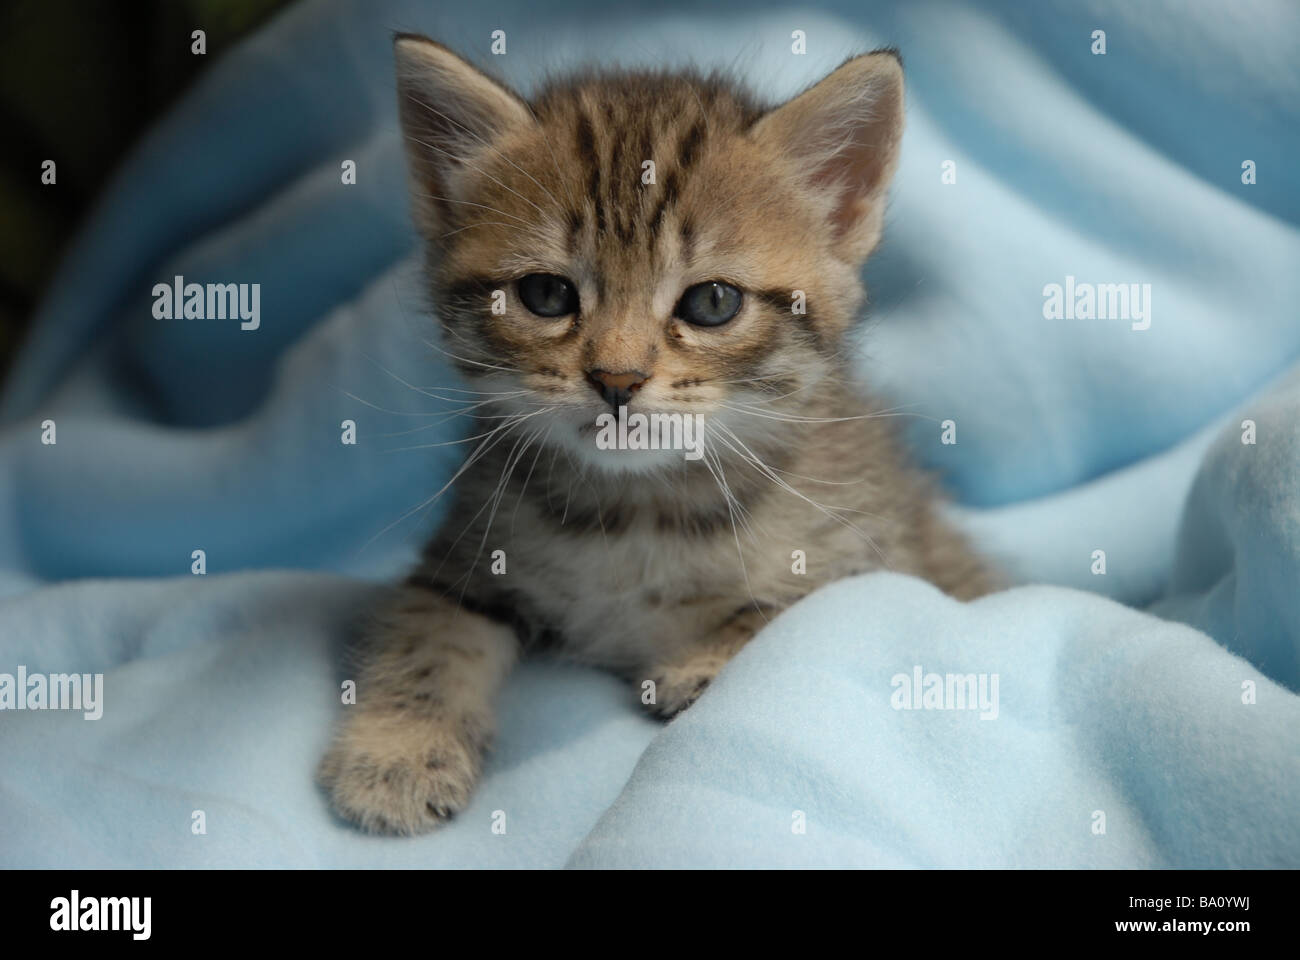 tabby kitten, 5 weeks old Stock Photo